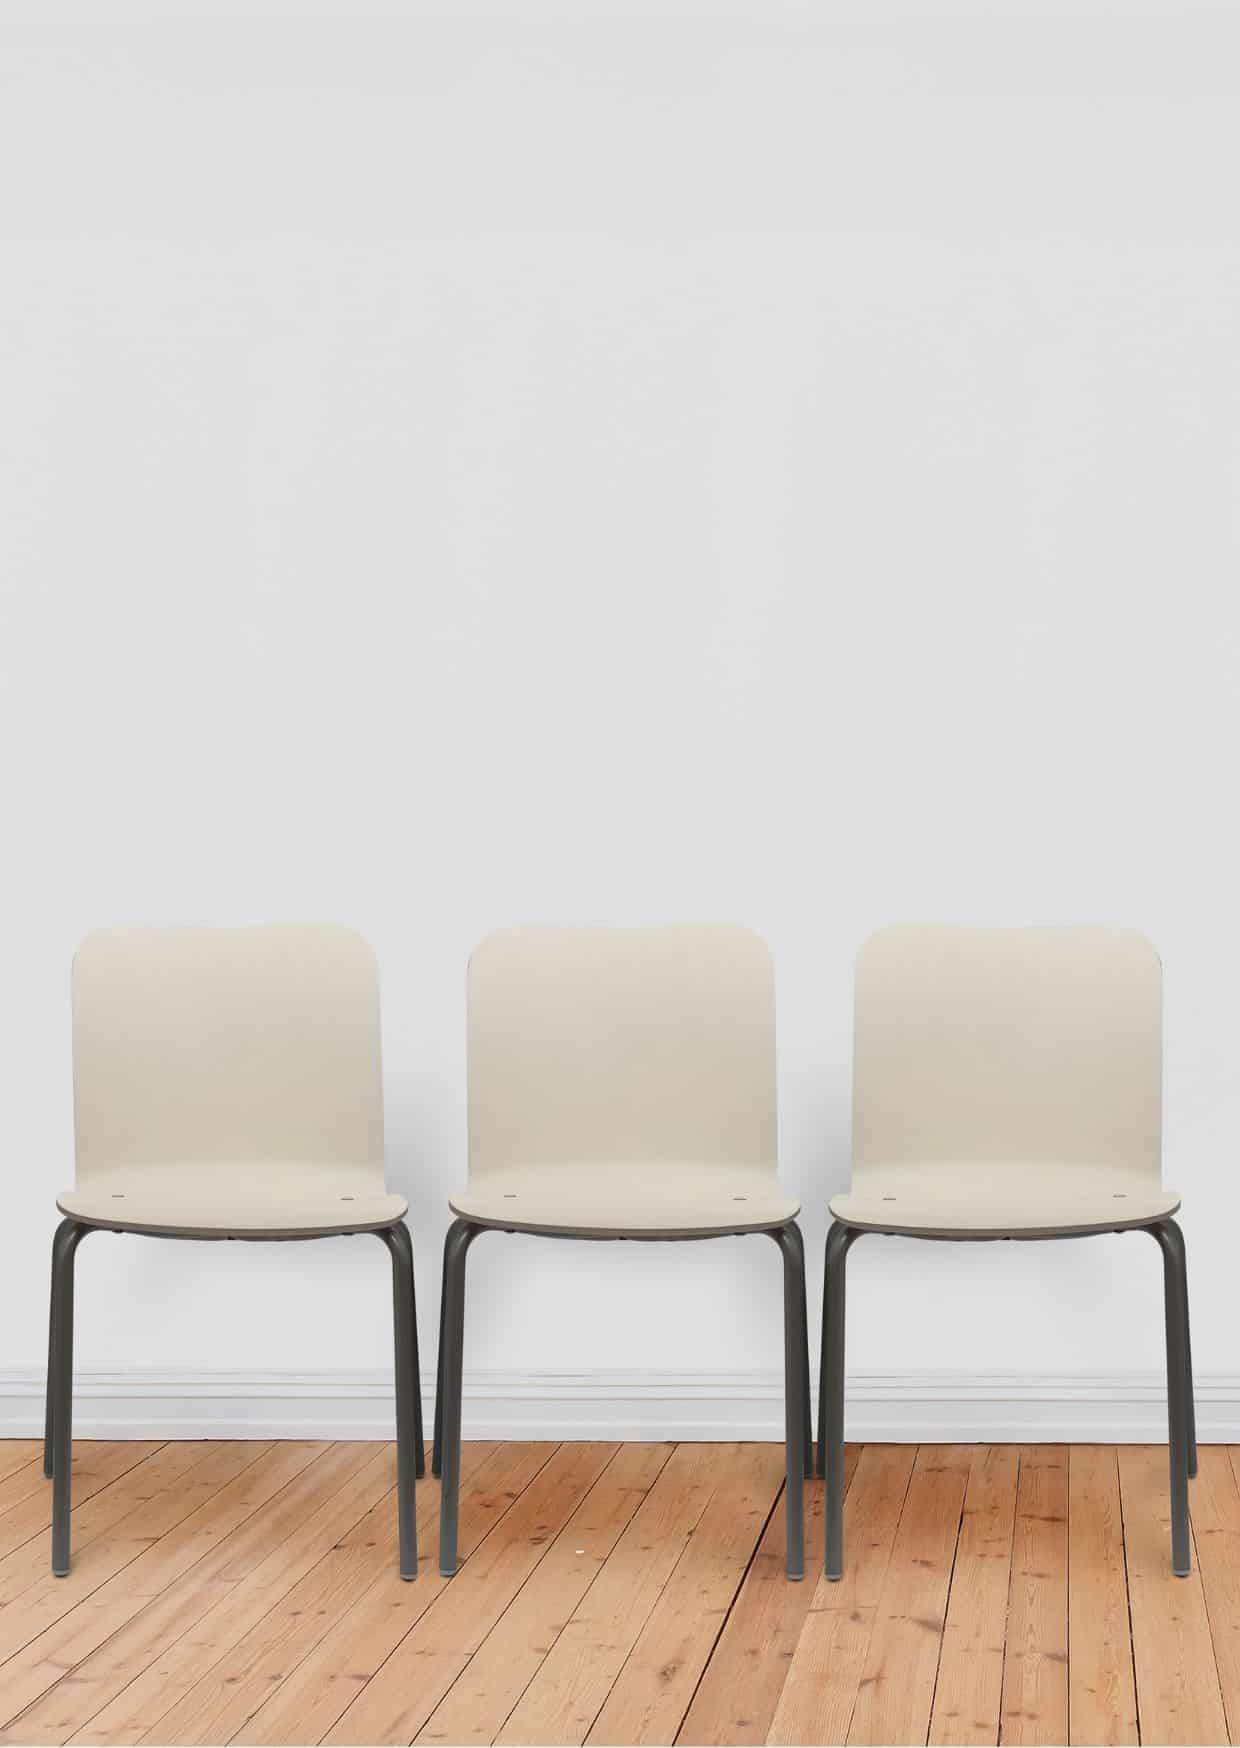 drei weiße Stühle mit schwarzen Beinen vor einer weißen Wand. Der Fusboden ist Kiefernparkett.